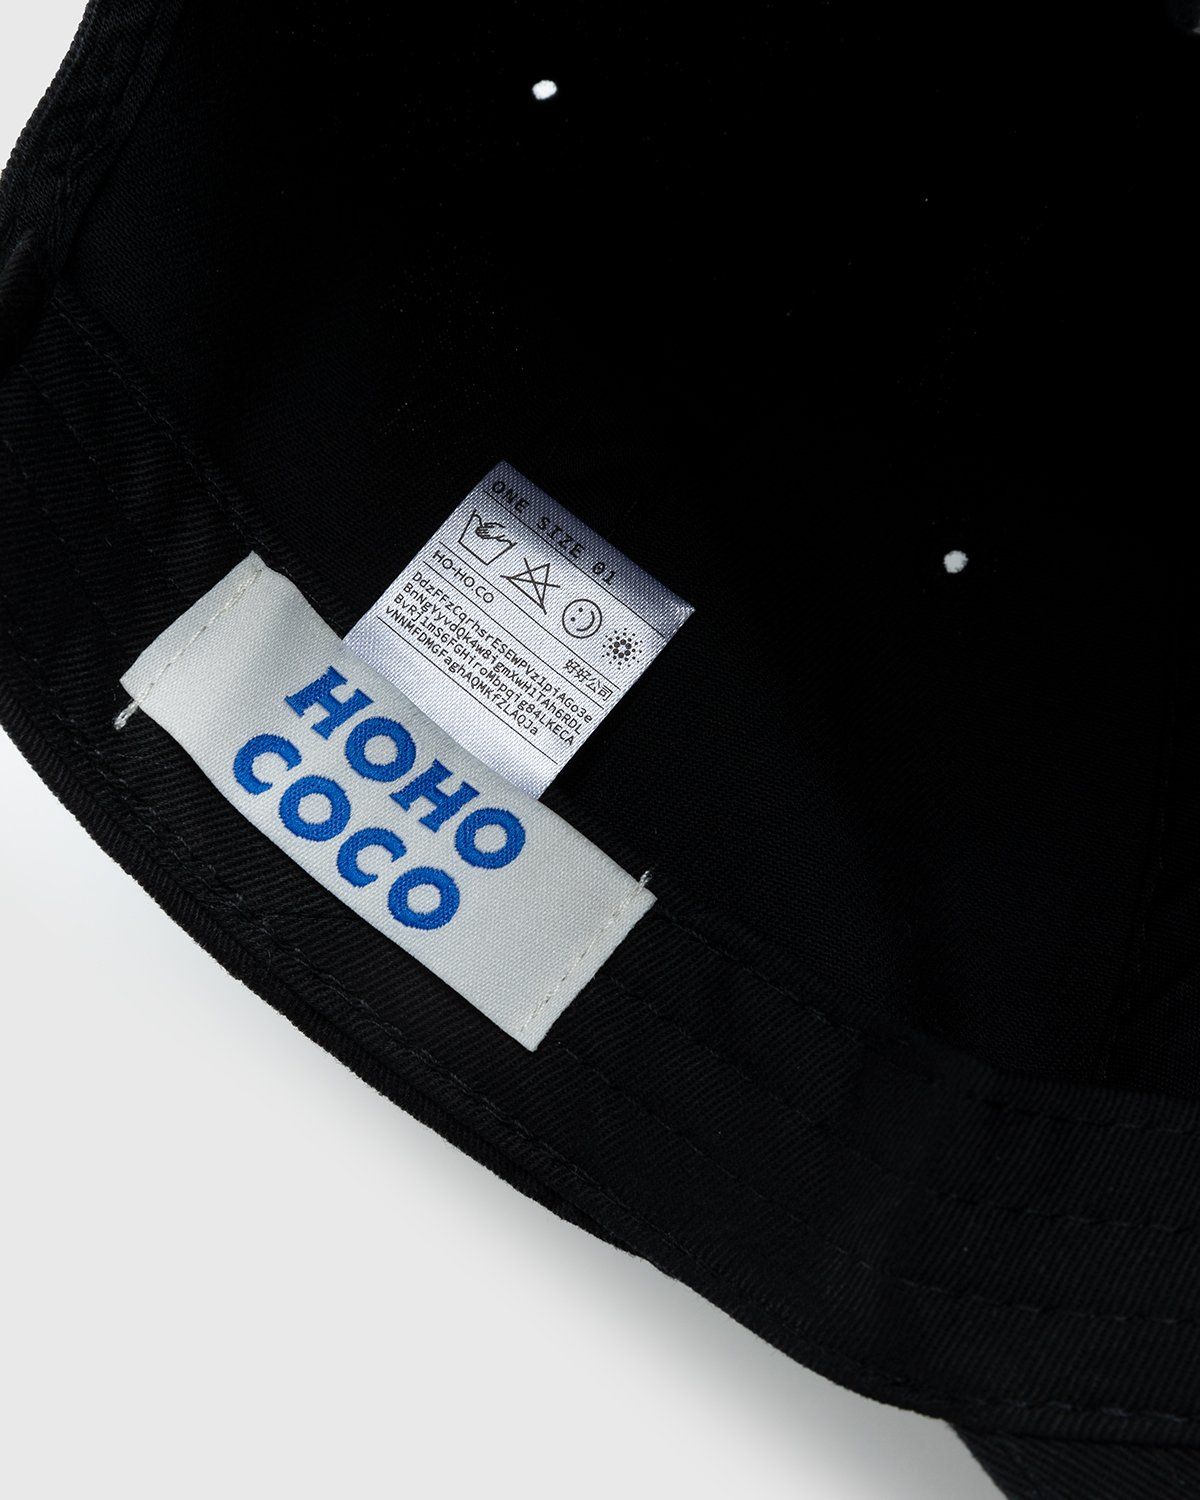 HO HO COCO – Executive Assistant Cap Black - Hats - Black - Image 4